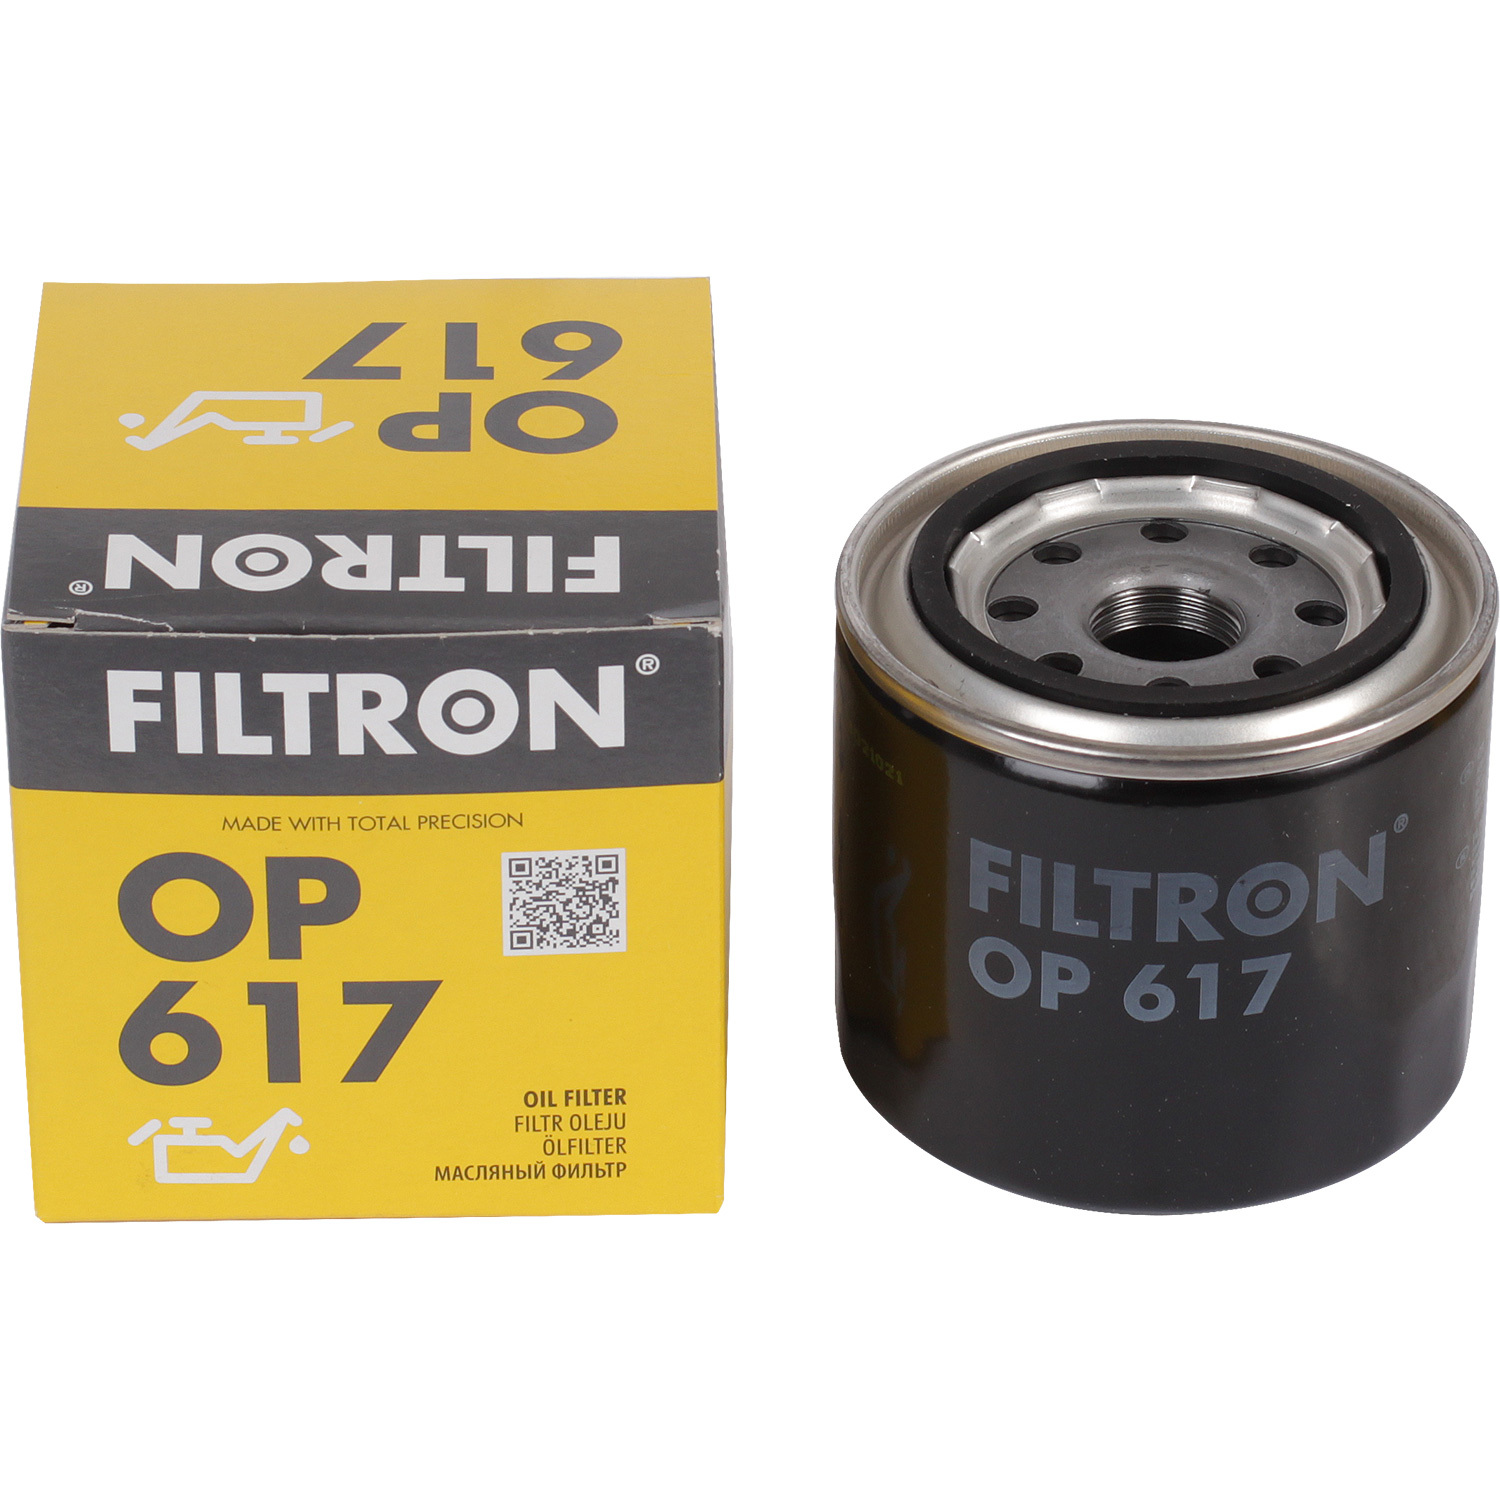 фильтры filtron фильтр масляный filtron op520 Фильтры Filtron Фильтр масляный Filtron OP617